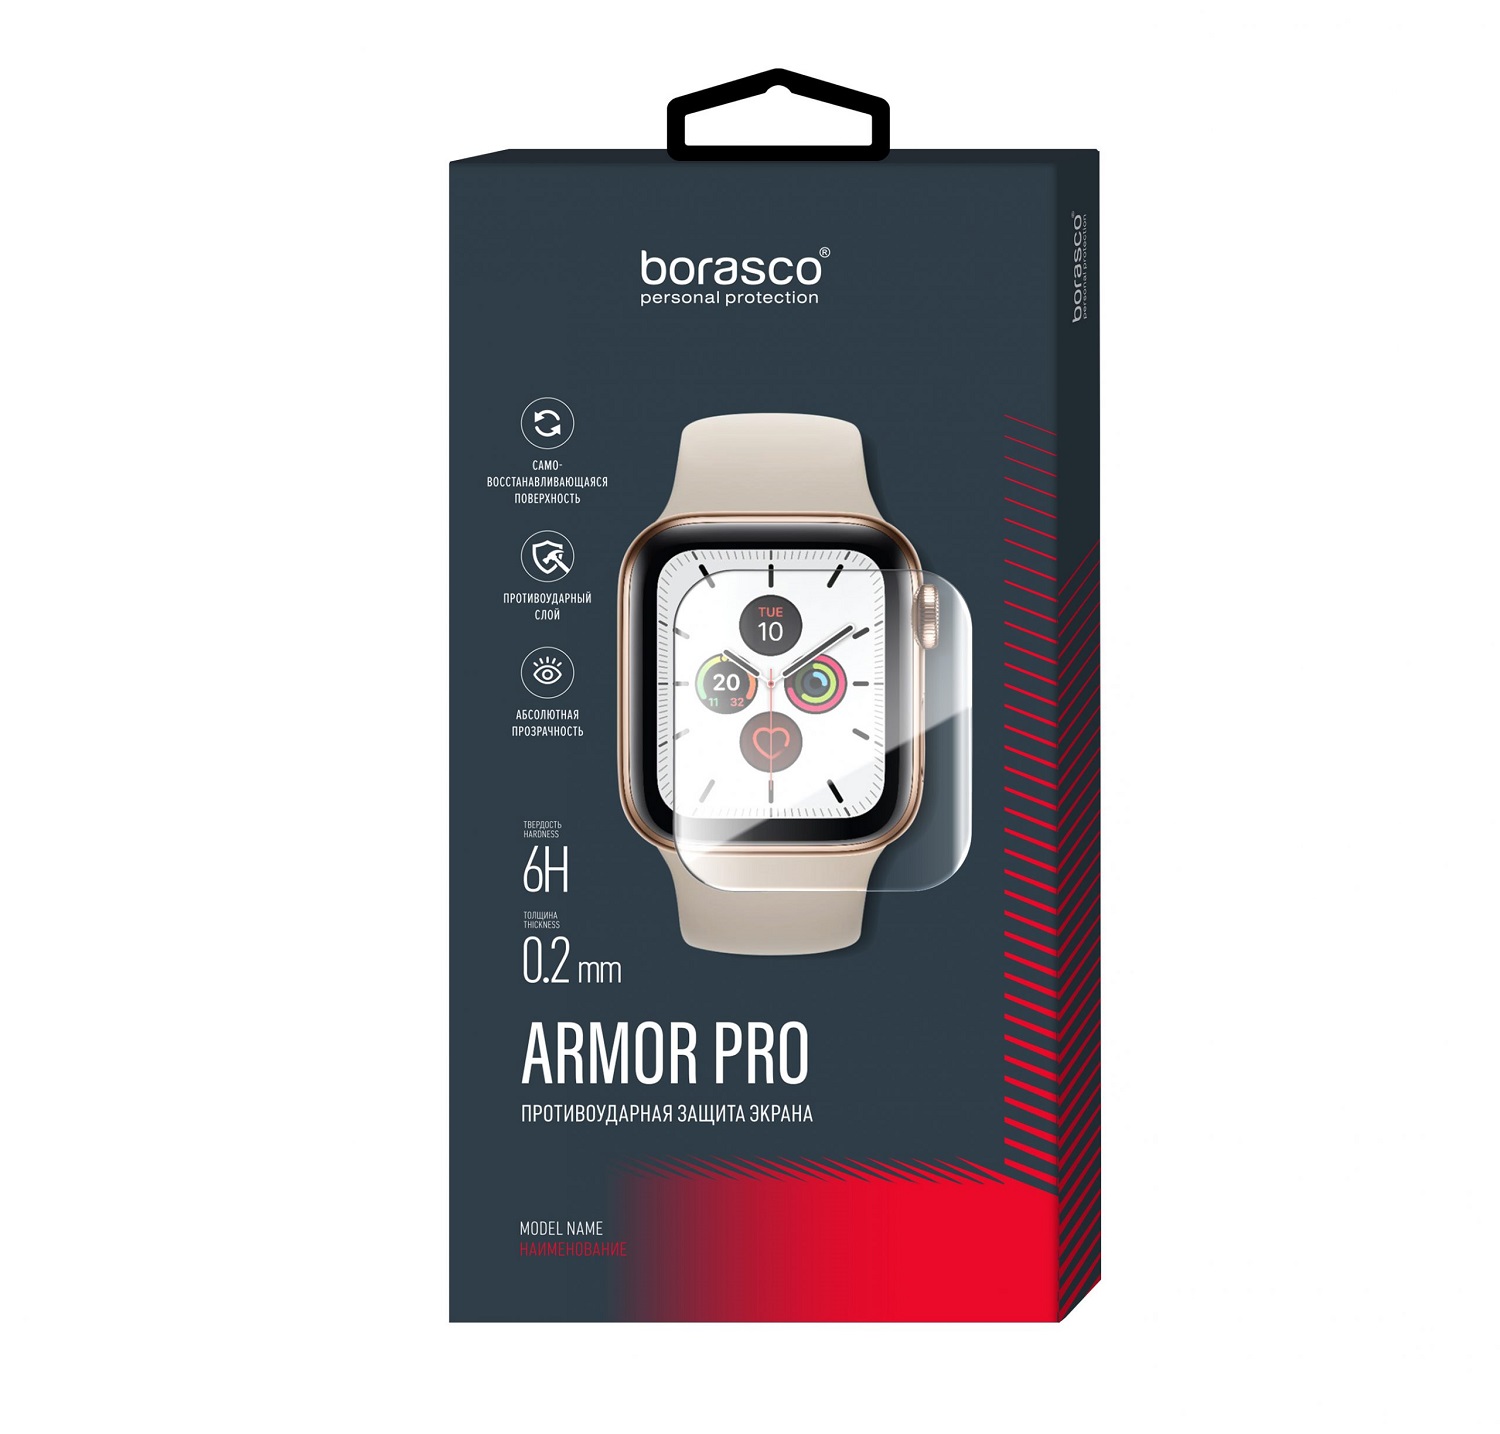 Защита экрана BoraSCO Armor Pro для Huawei Watch GT 2 защита экрана borasco armor pro для honor watch se